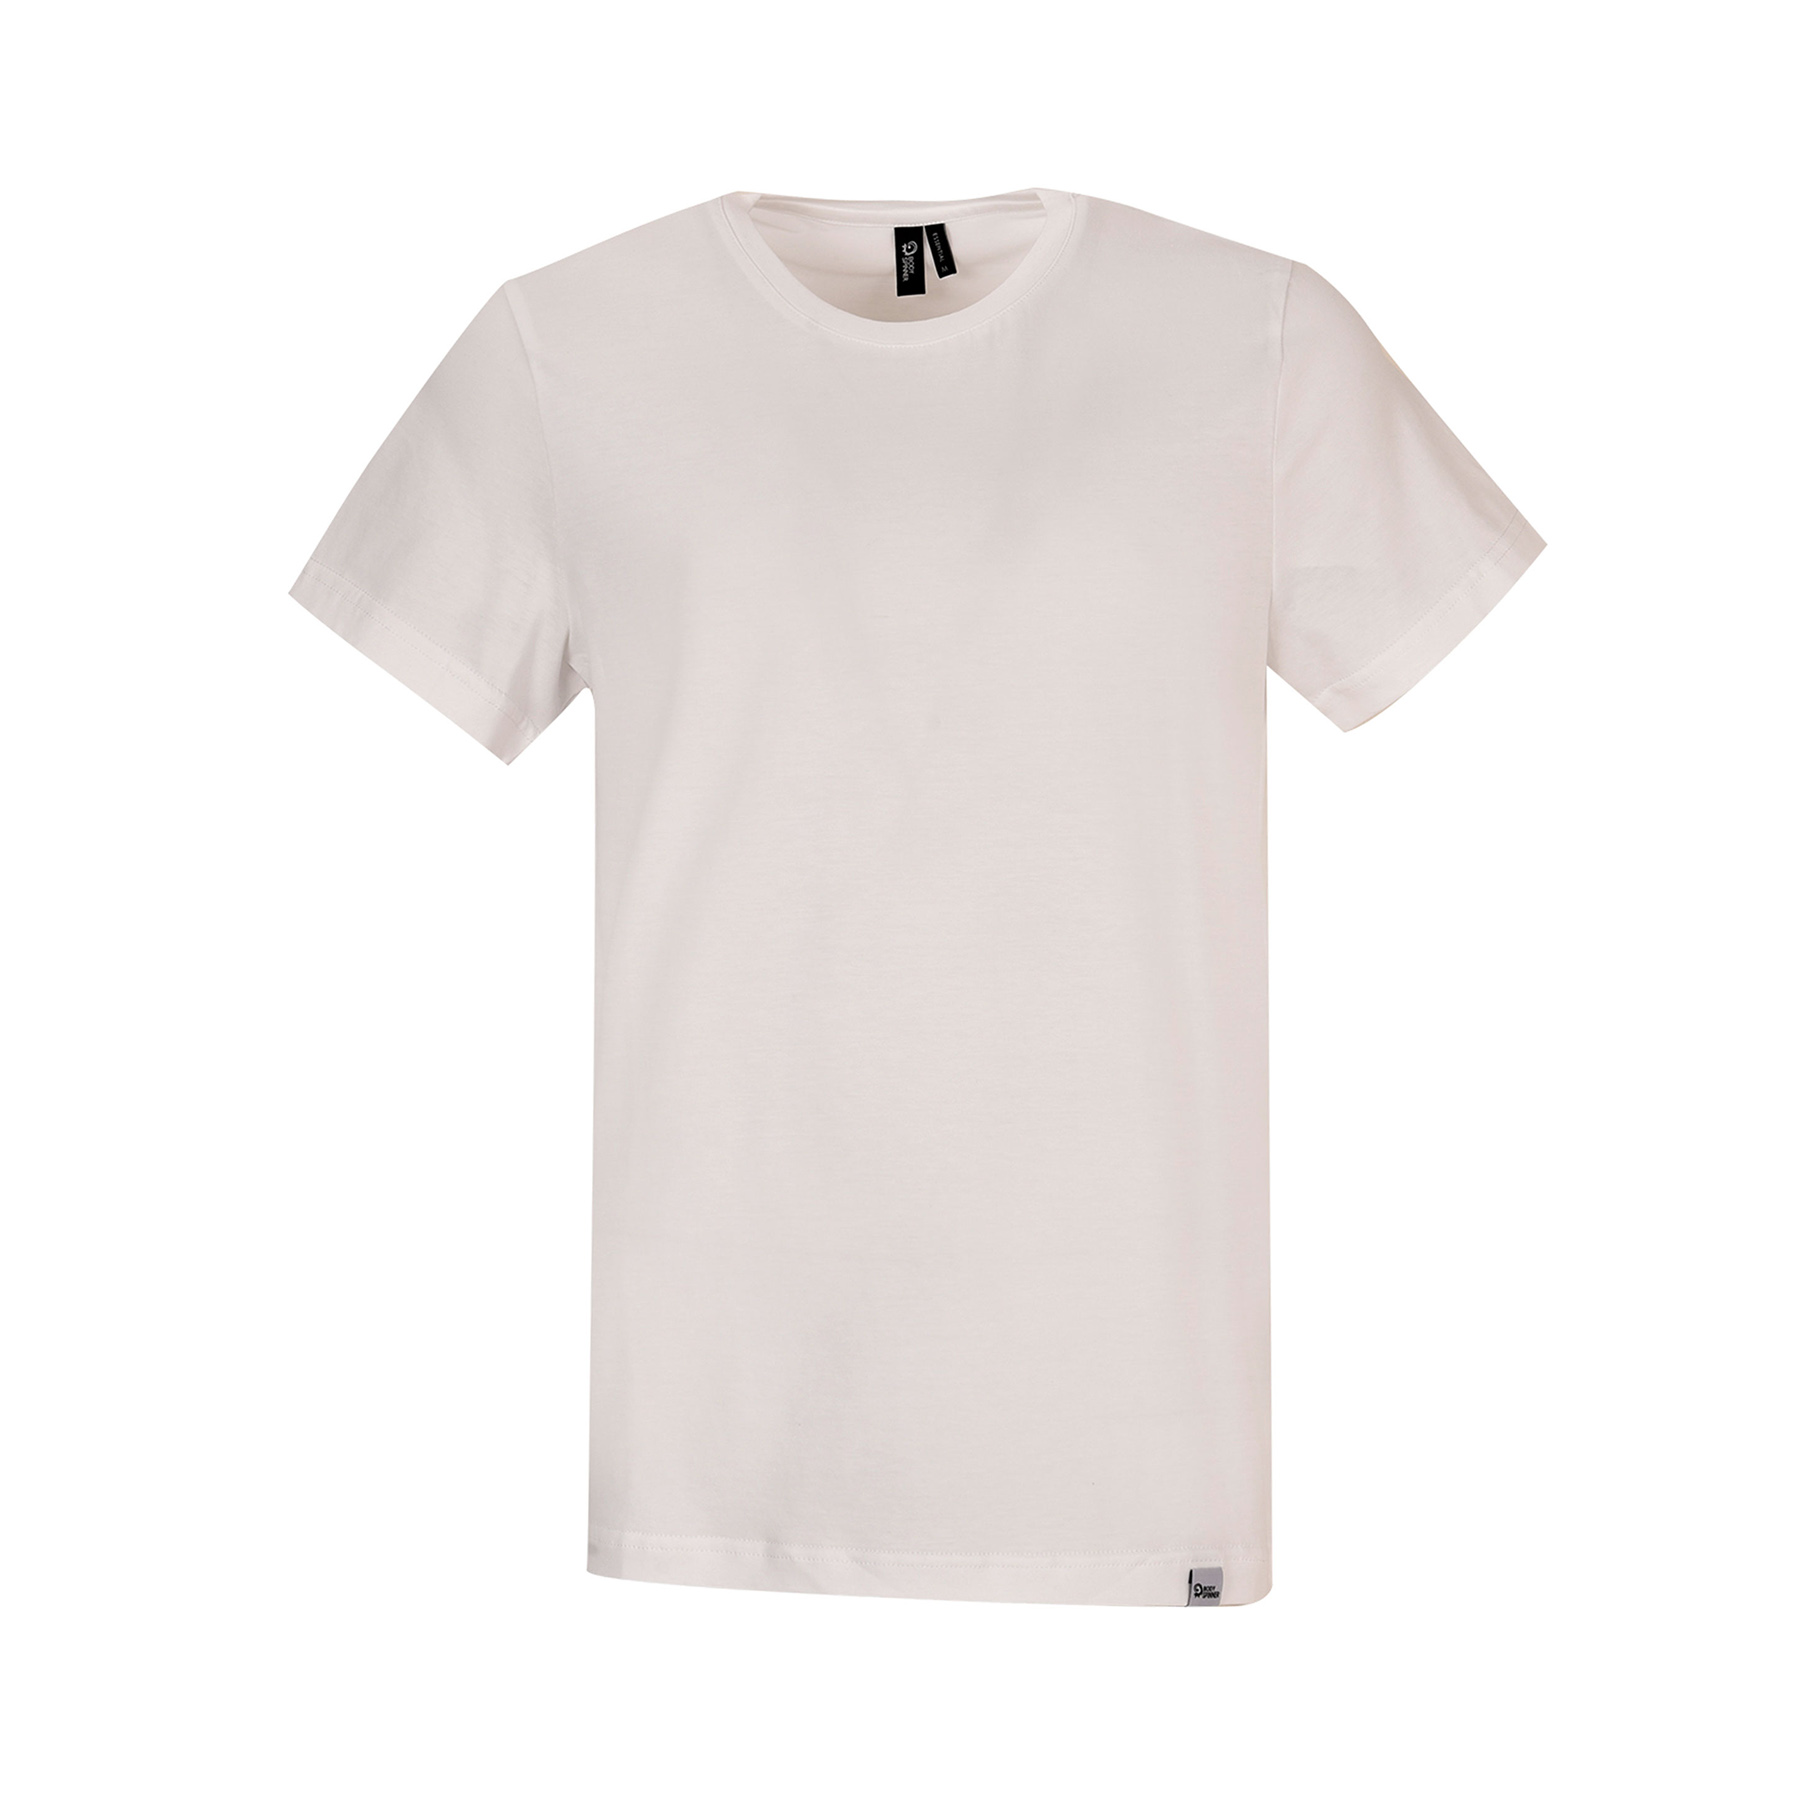 تی شرت آستین کوتاه مردانه بادی اسپینر مدل 11964737 رنگ سفید -  - 1